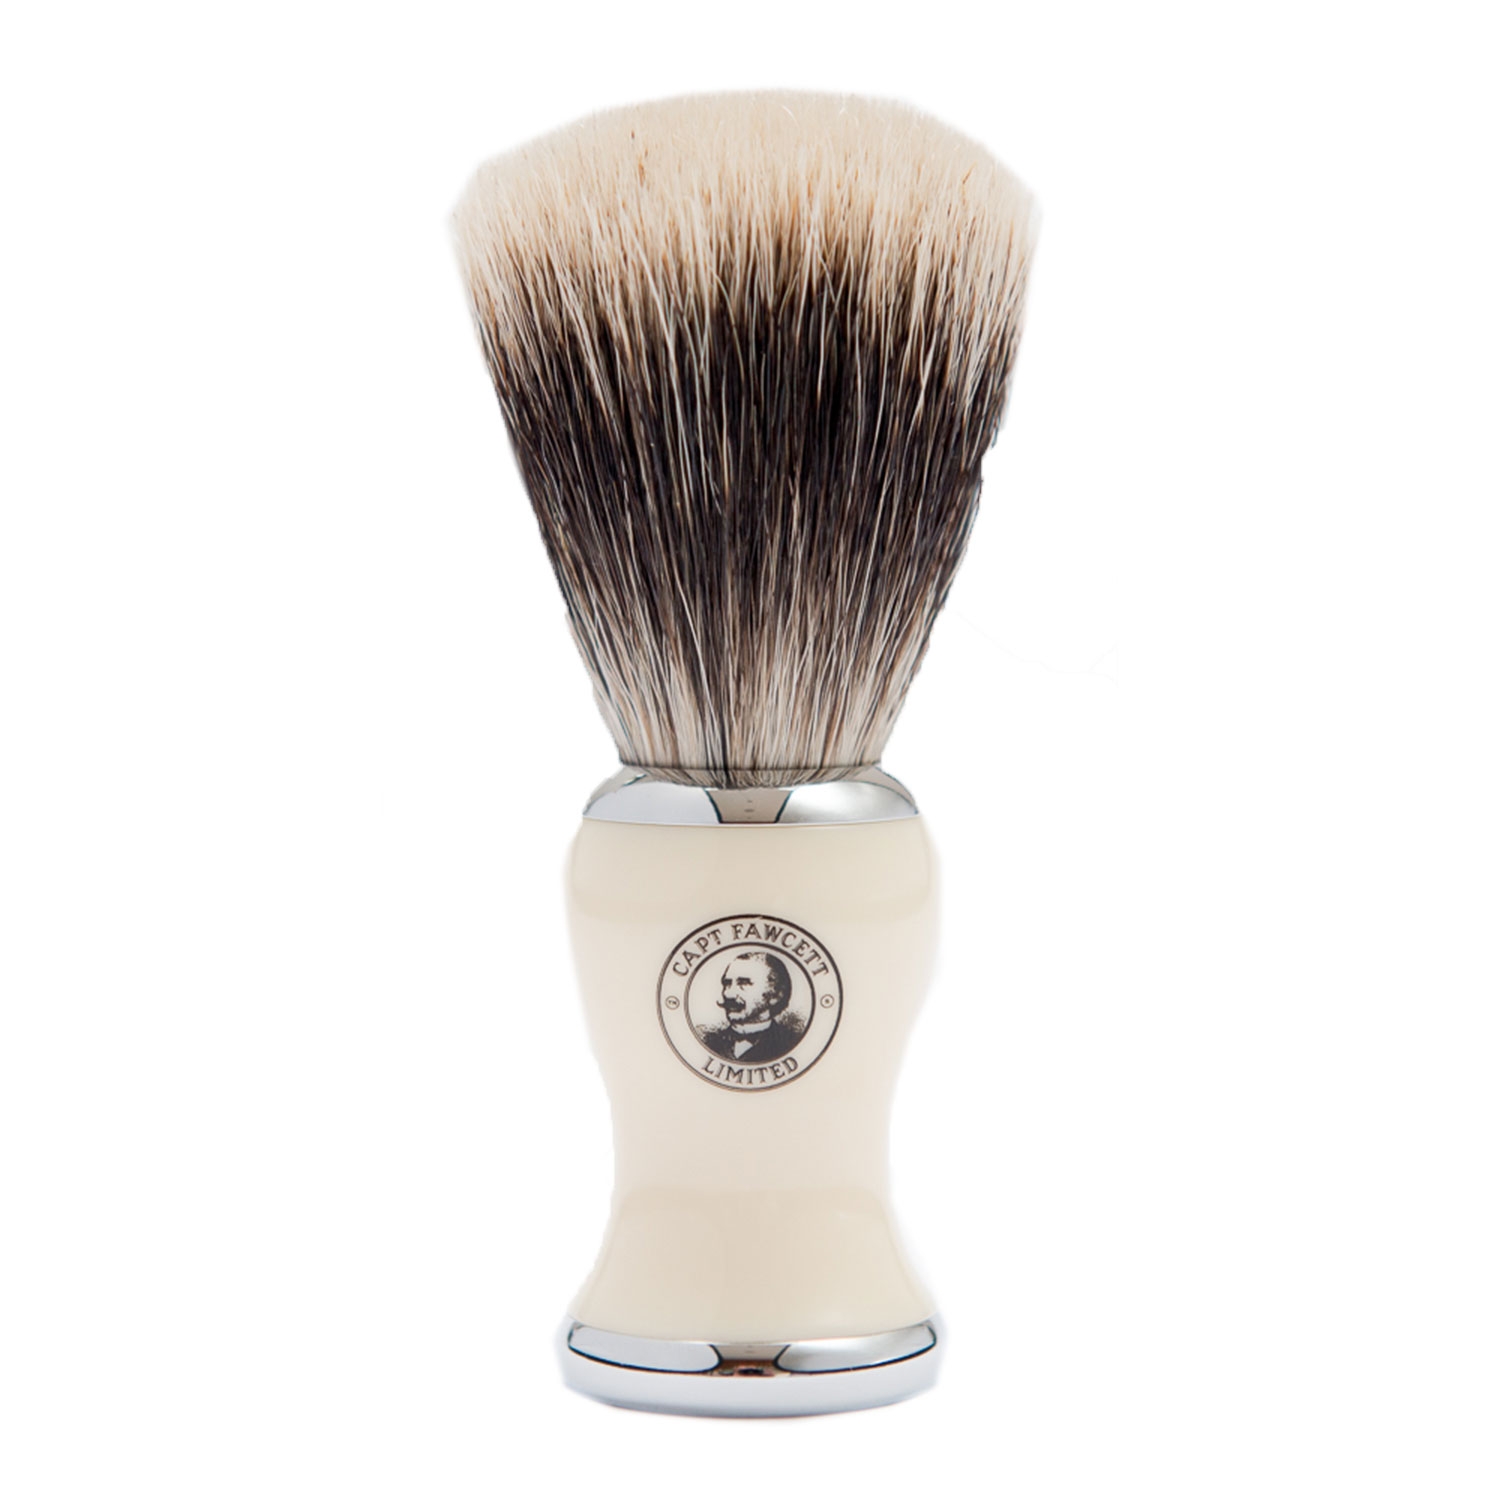 Produktbild von Capt. Fawcett Tools - Best Badger Shaving Brush